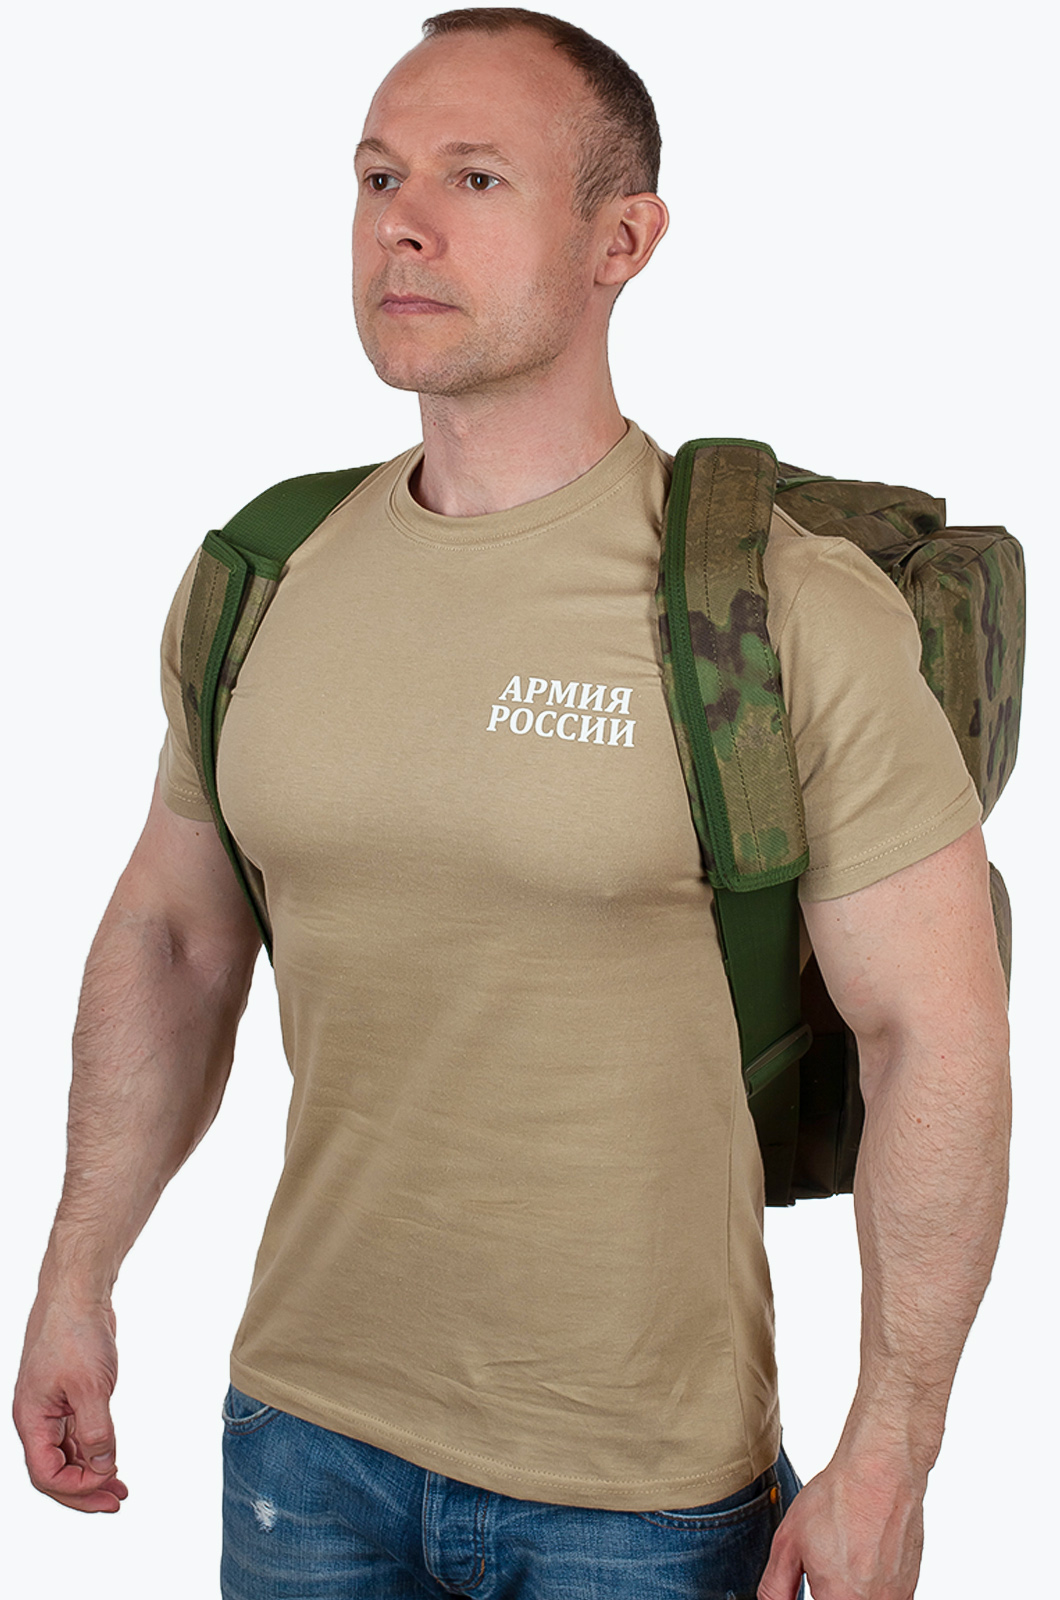 Военная походная сумка с нашивкой ФСО 